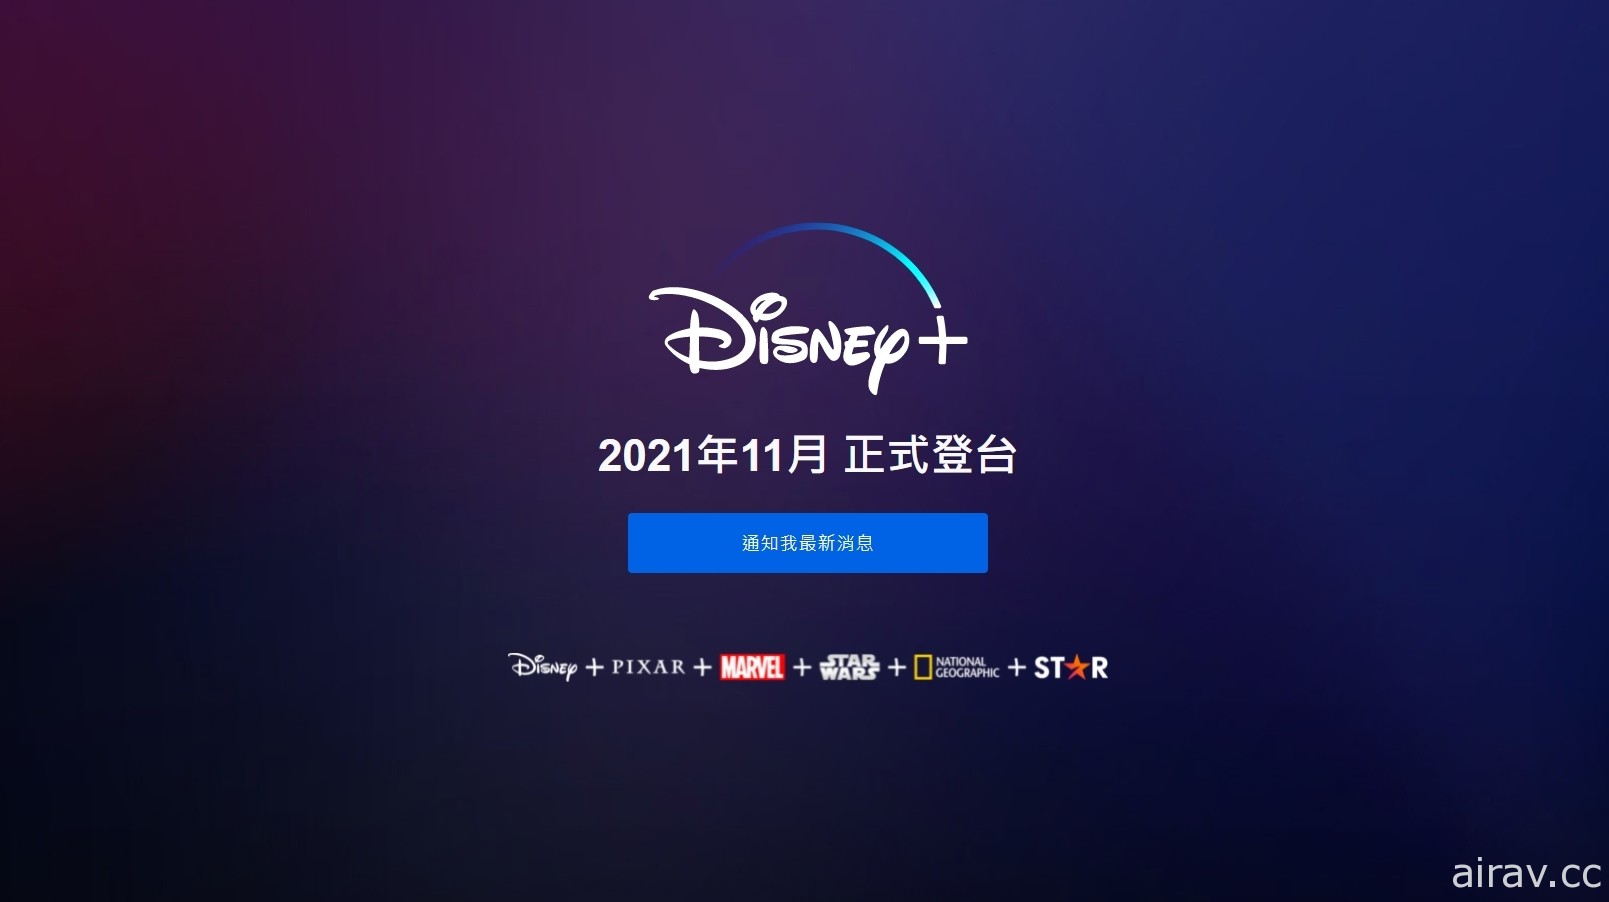 Disney+ 將於今年 11 月正式登陸台灣 香港及南韓同步推出